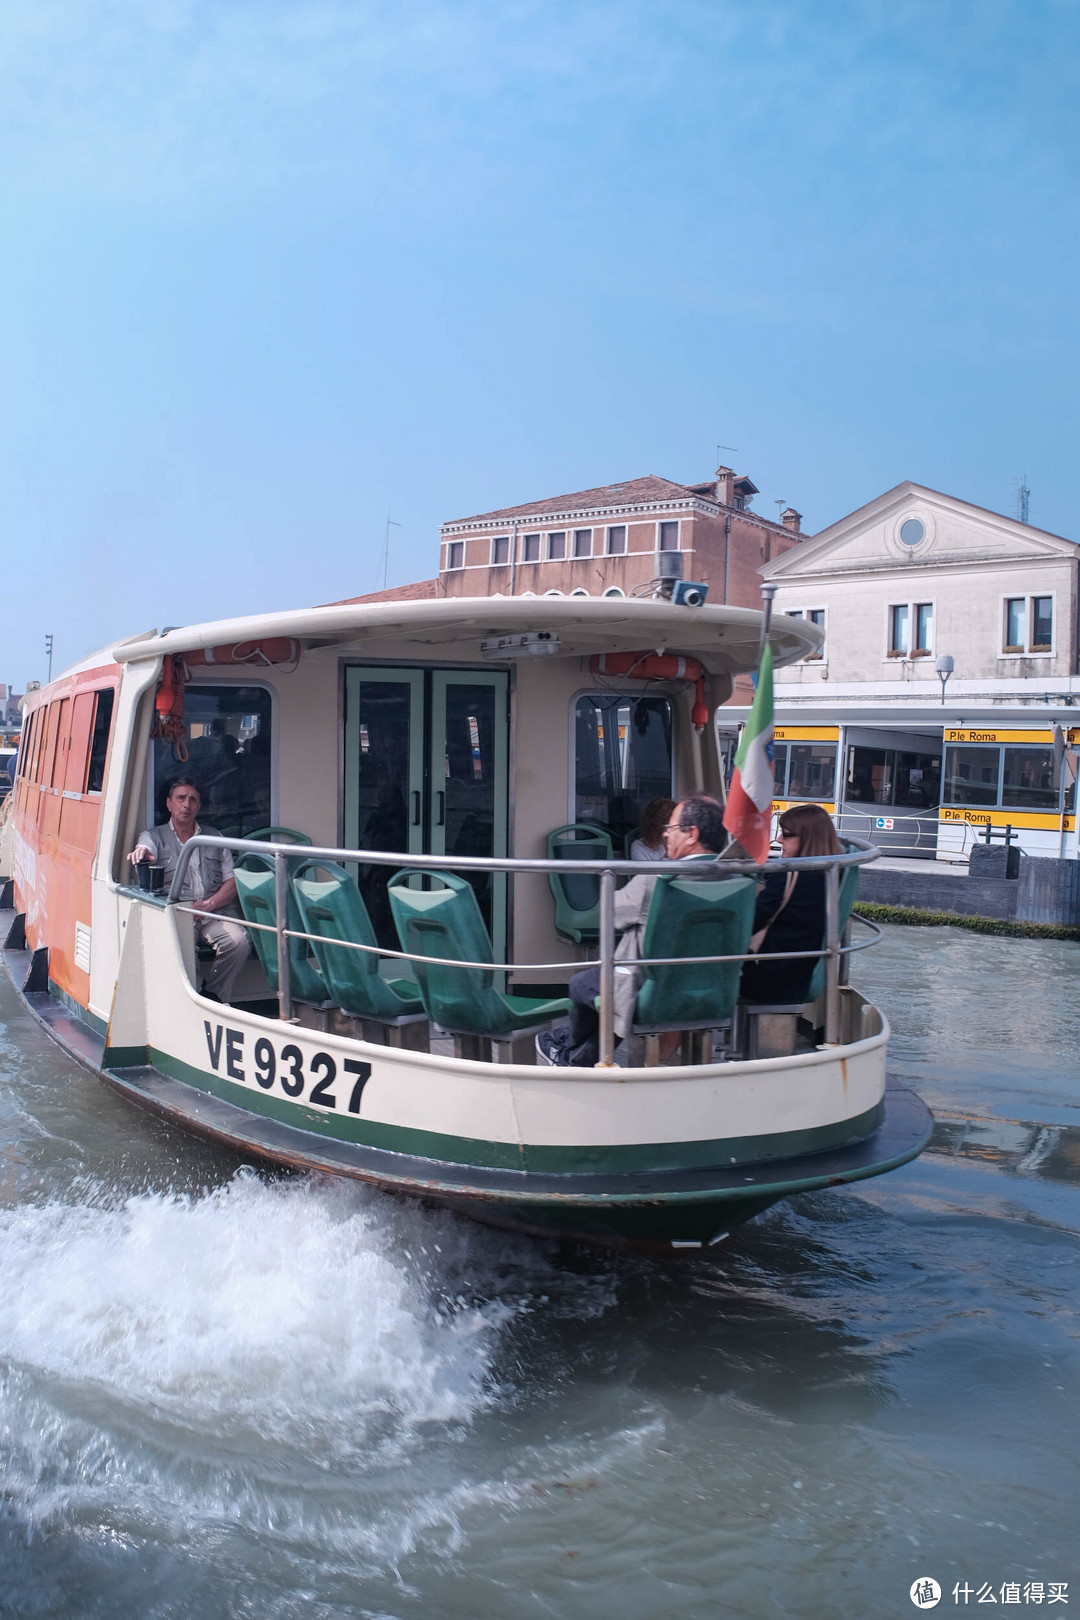 威尼斯的公交船，基本是这样的，但并非所有都有船头的景观位置，碰运气吧。